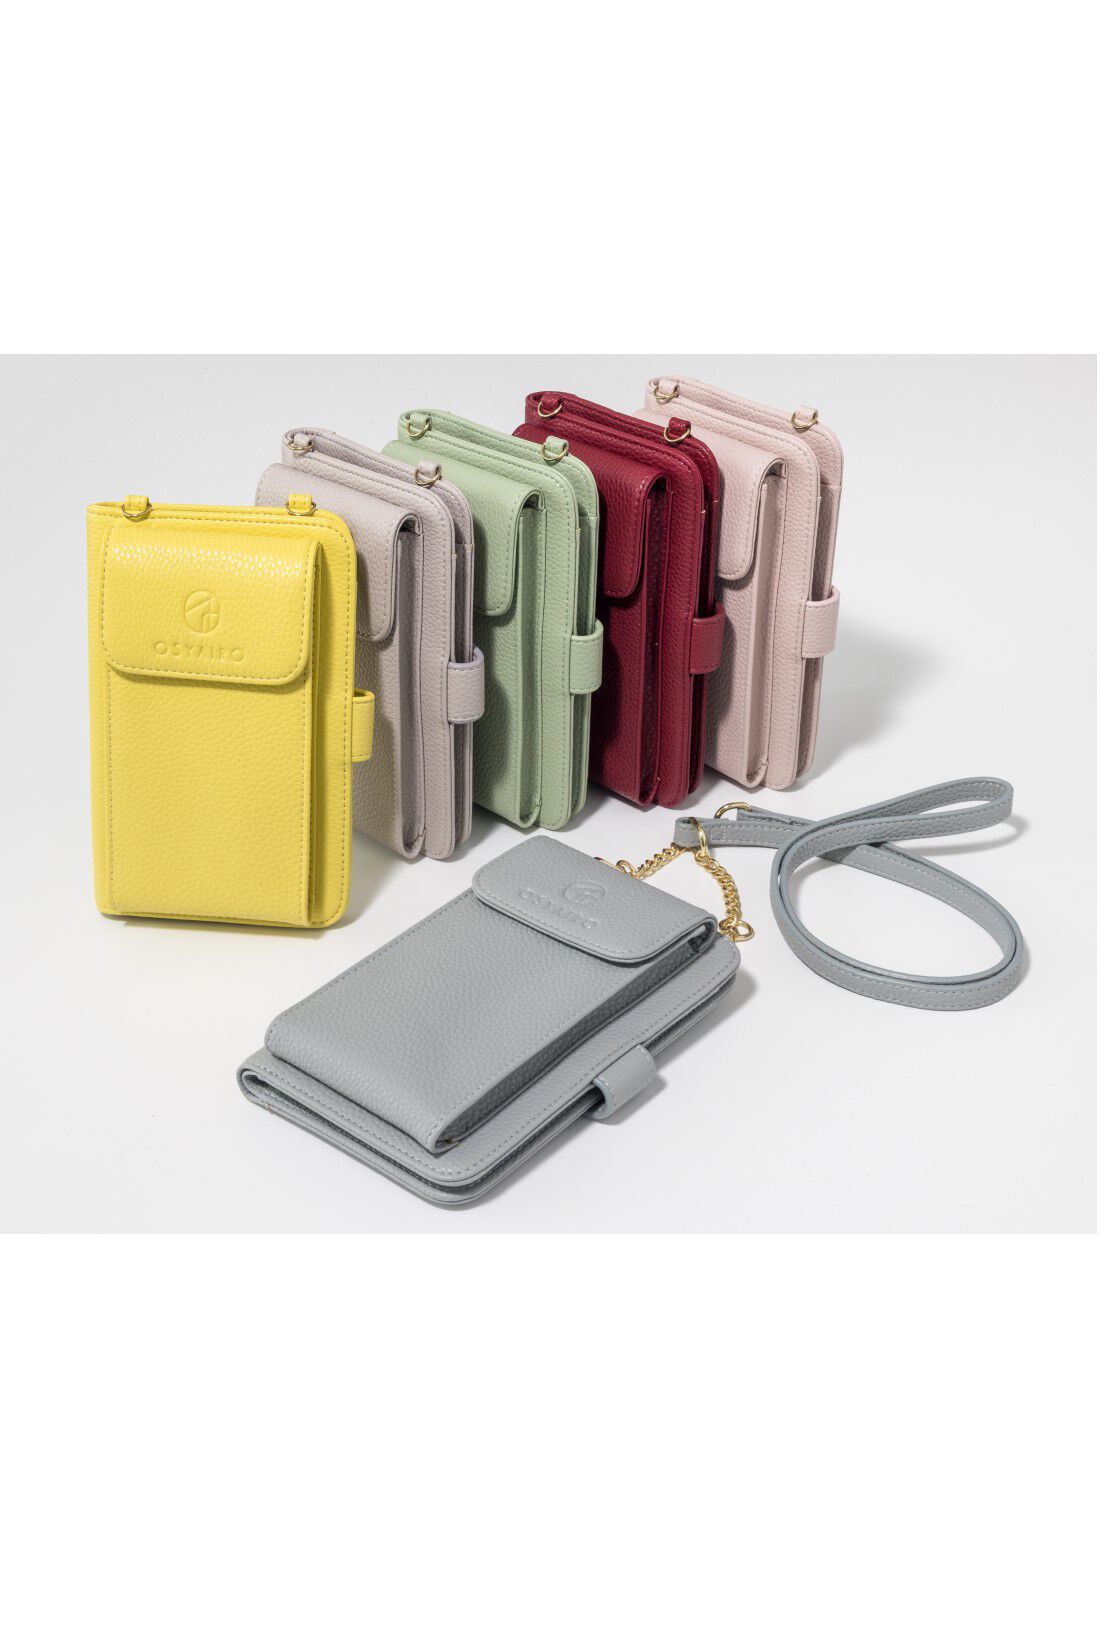 OSYAIRO|OSYAIRO フォトポケットが付いた スマホ＆おさいふポーチ〈パープル〉|カラーは全部で6色。あなたの推し色で選んでくださいね。